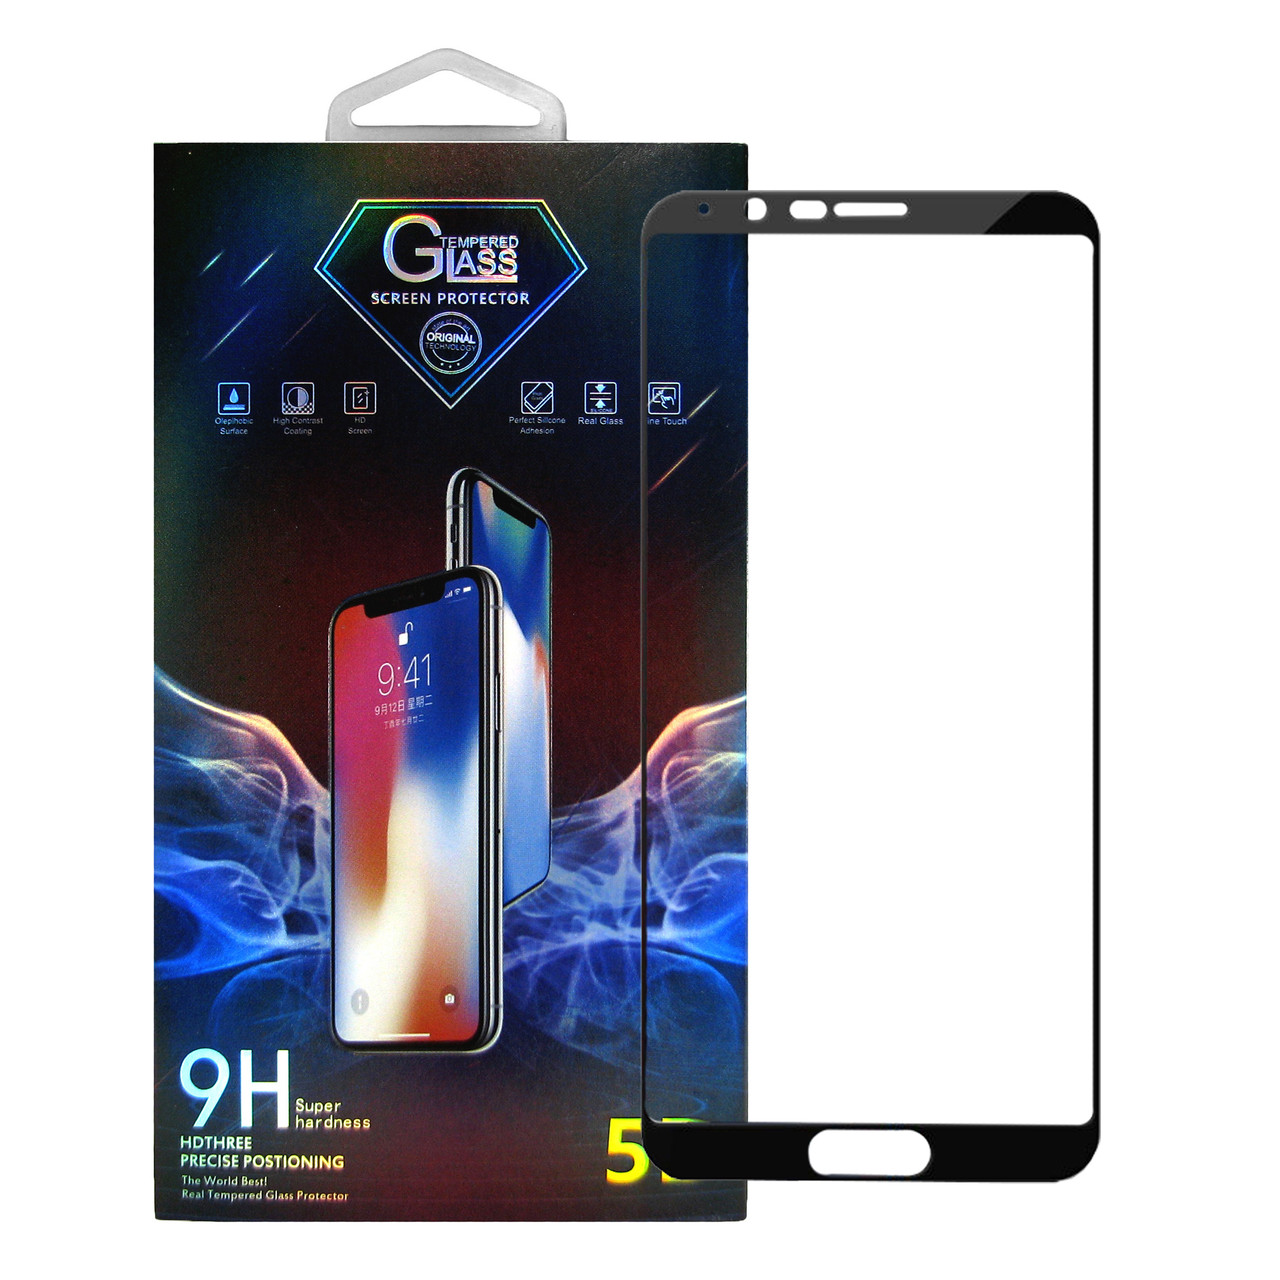 Защитное стекло Premium Glass 5D Full Glue для Honor V10 / View 10 Black (hub_Kqpl56584)